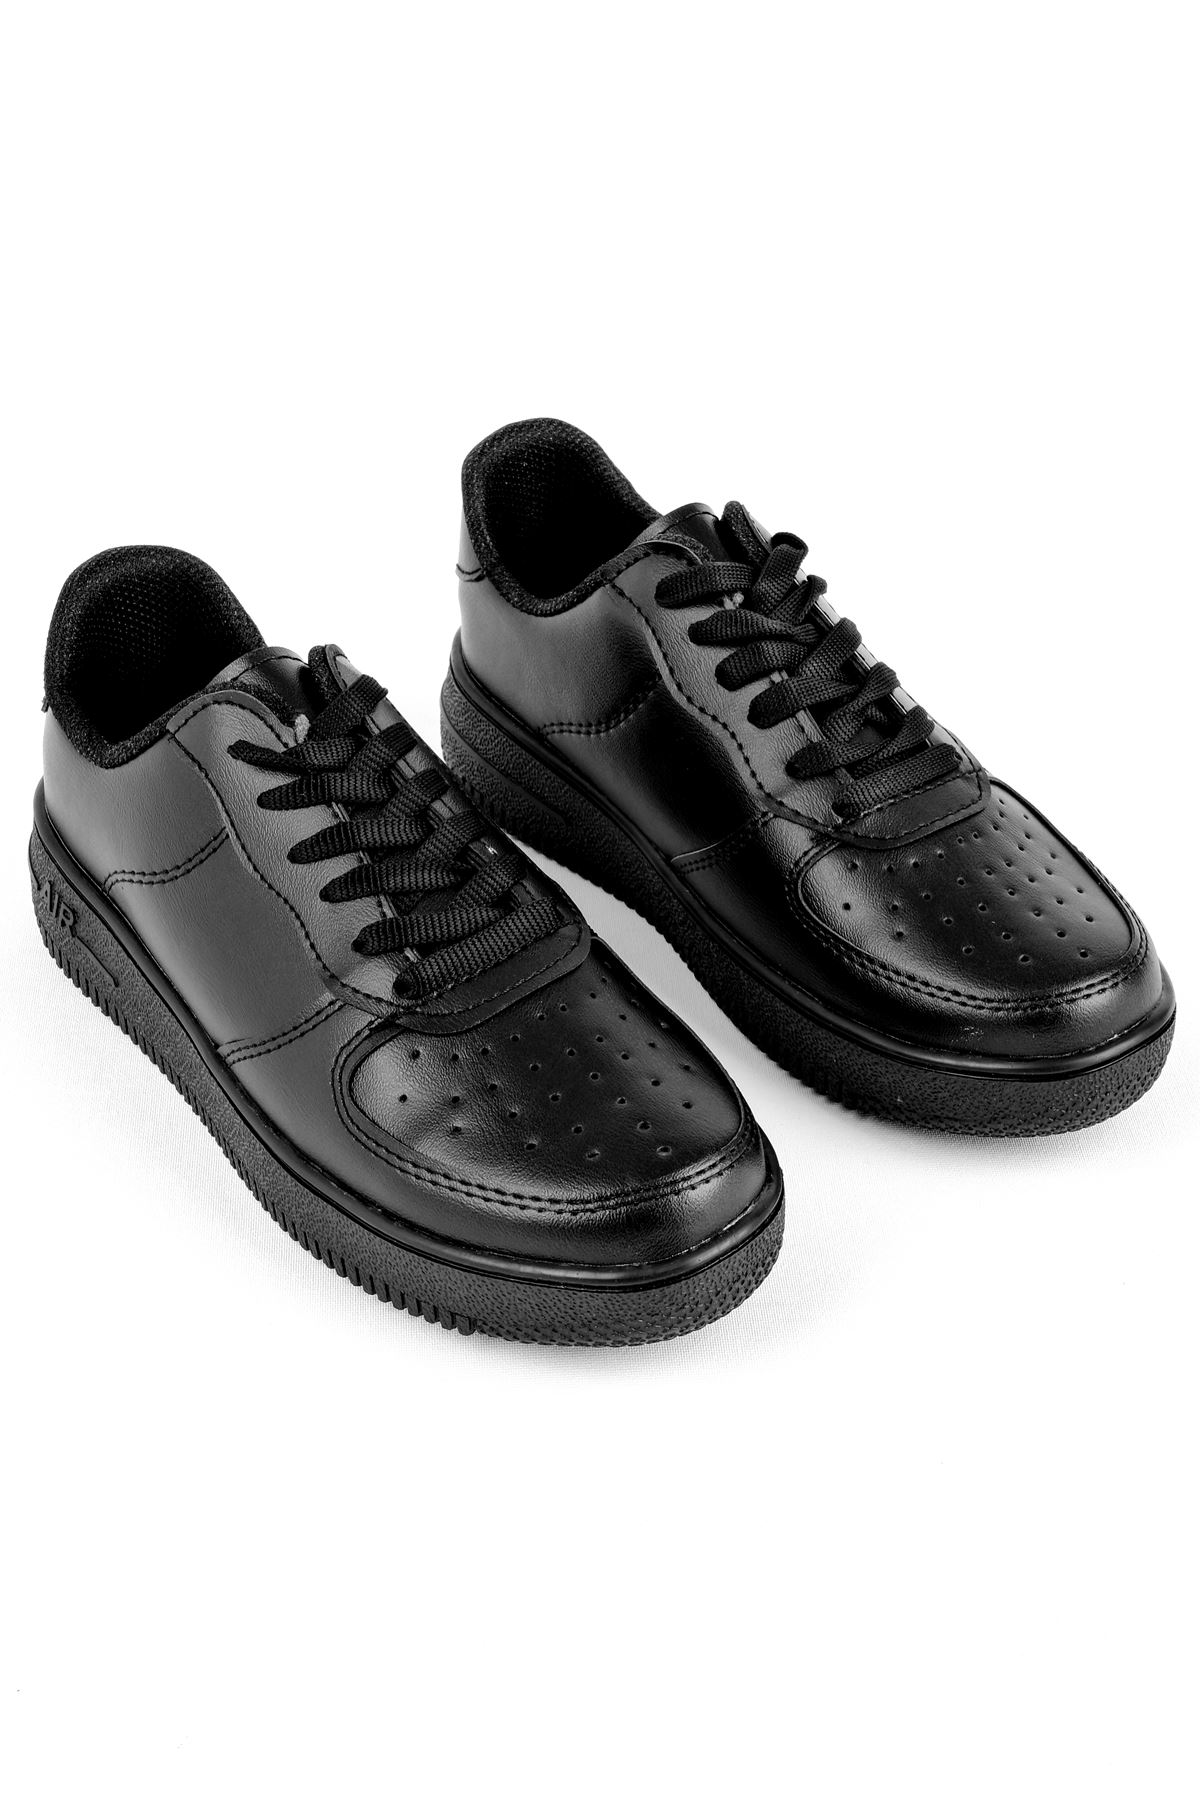 Kadın Spor Ayakkabı Ön Kısmı Delikli-siyah